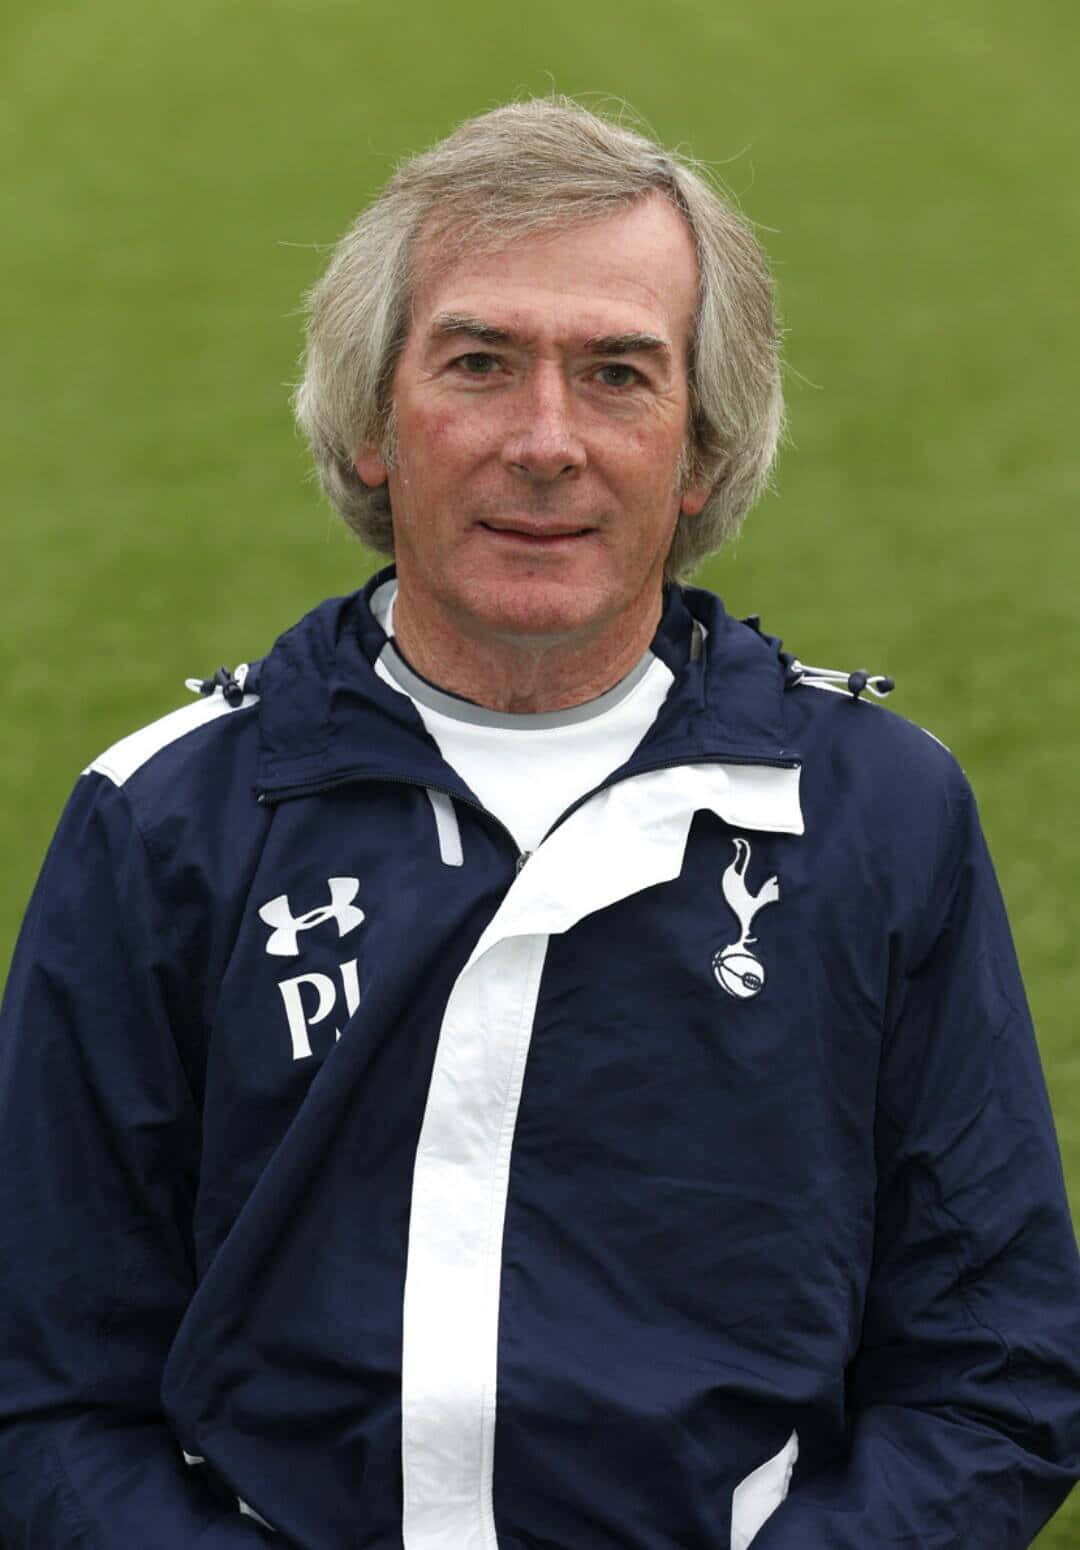 Pat Jennings With Tottenham Hotspur Jacket Wallpaper